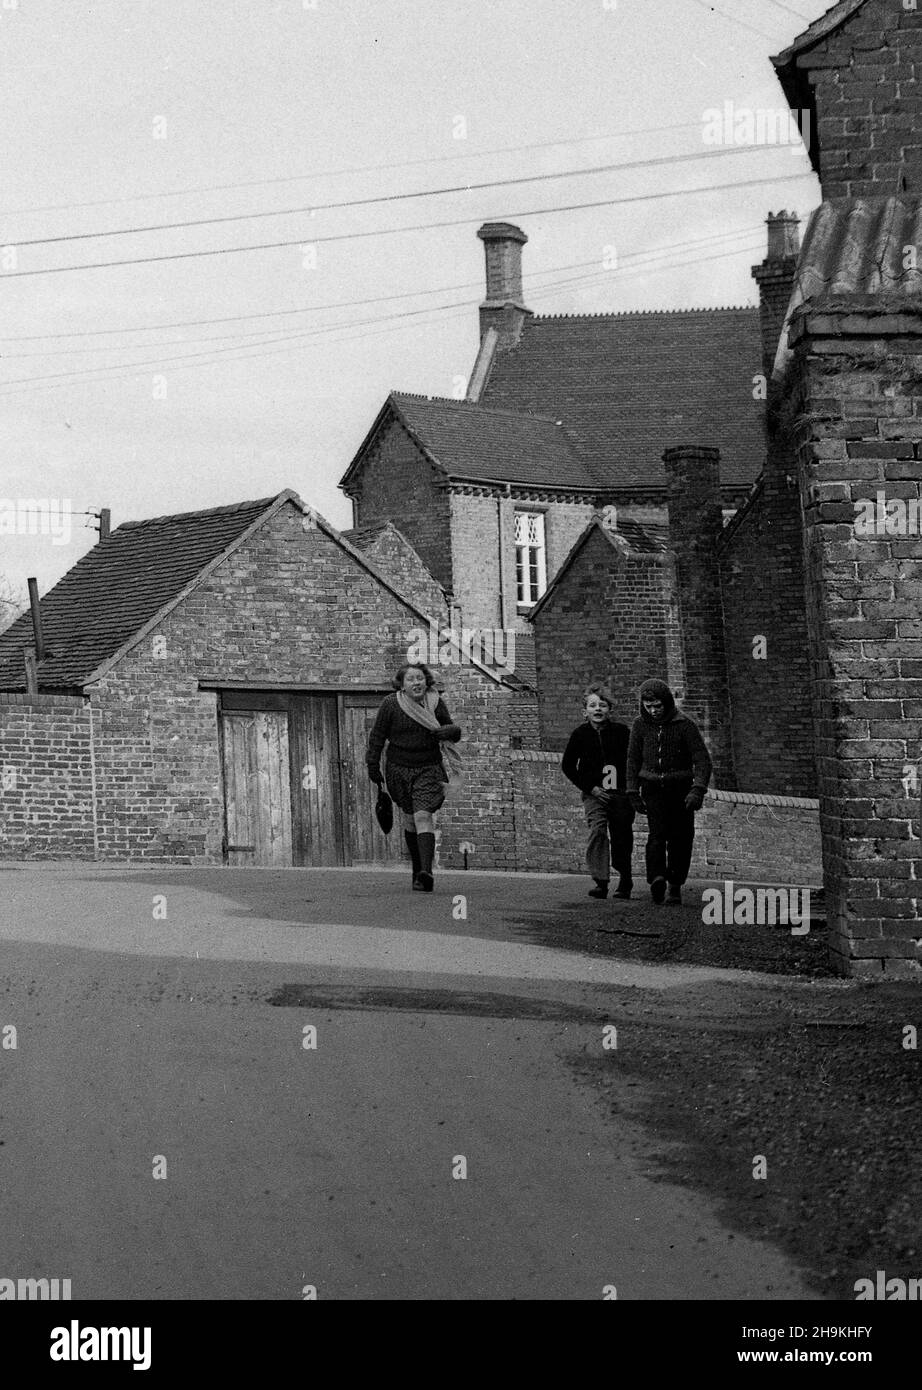 Les enfants qui marchent à la maison depuis l'école Coalport Road, Madeley en 1967.Royaume-Uni 1960s Banque D'Images